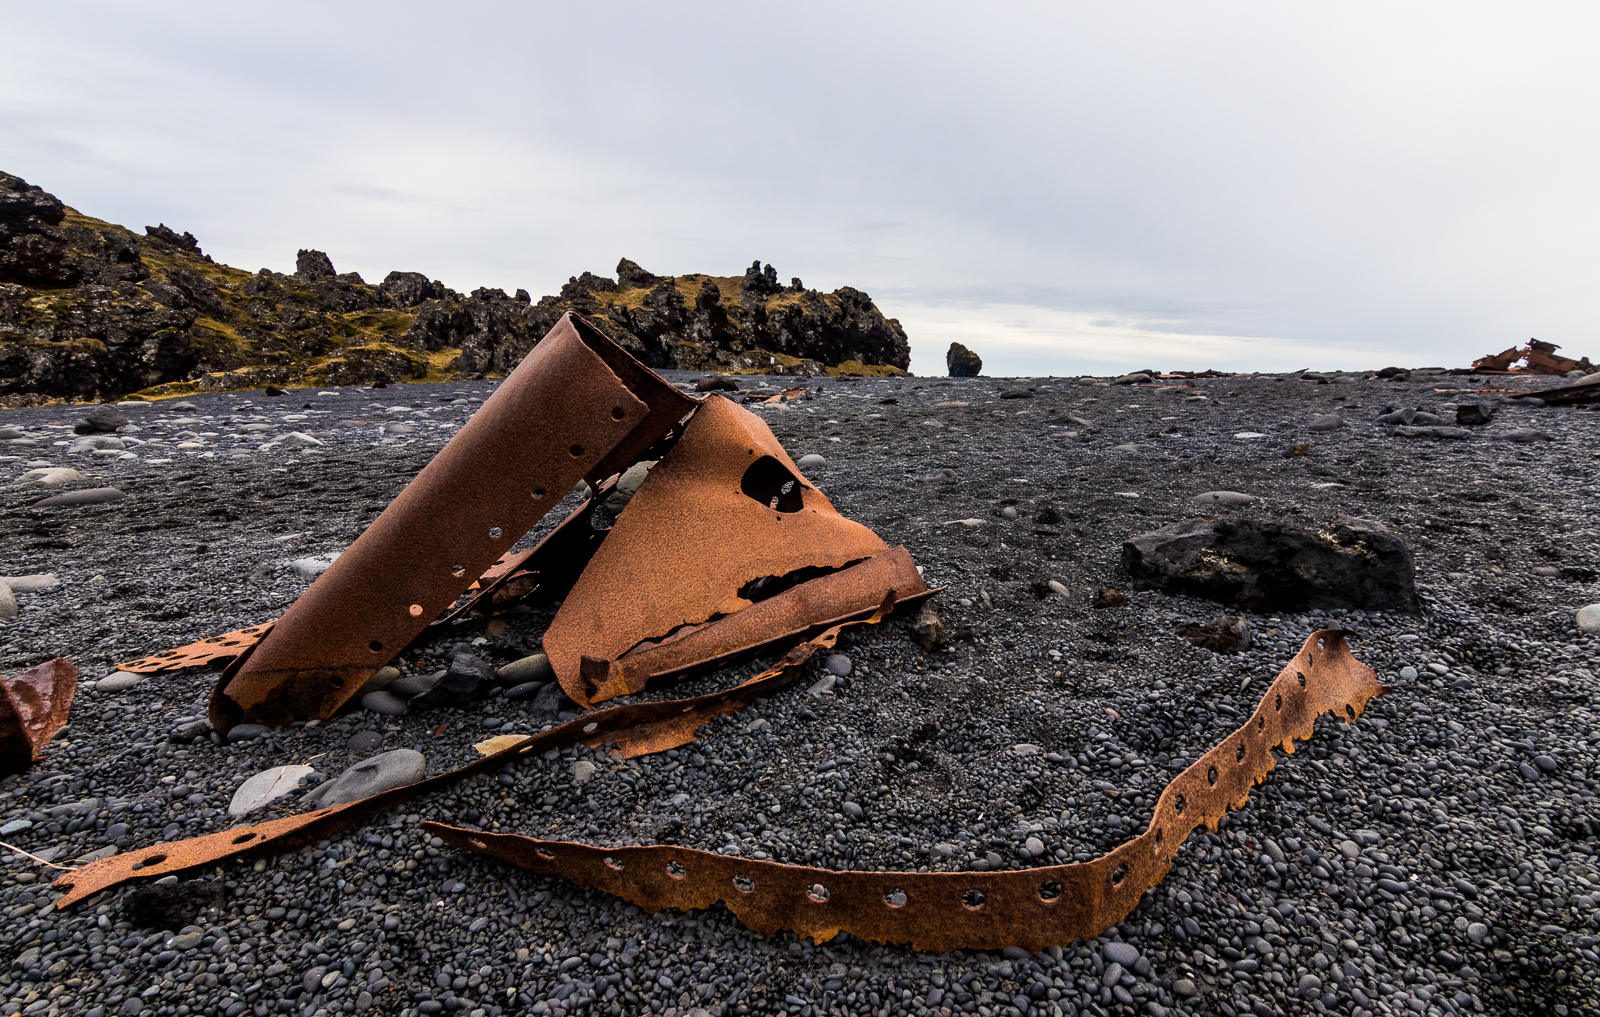 Plaża jest pełna zardzewiałych pozostałości statku, który rozbił się tu w 1948.